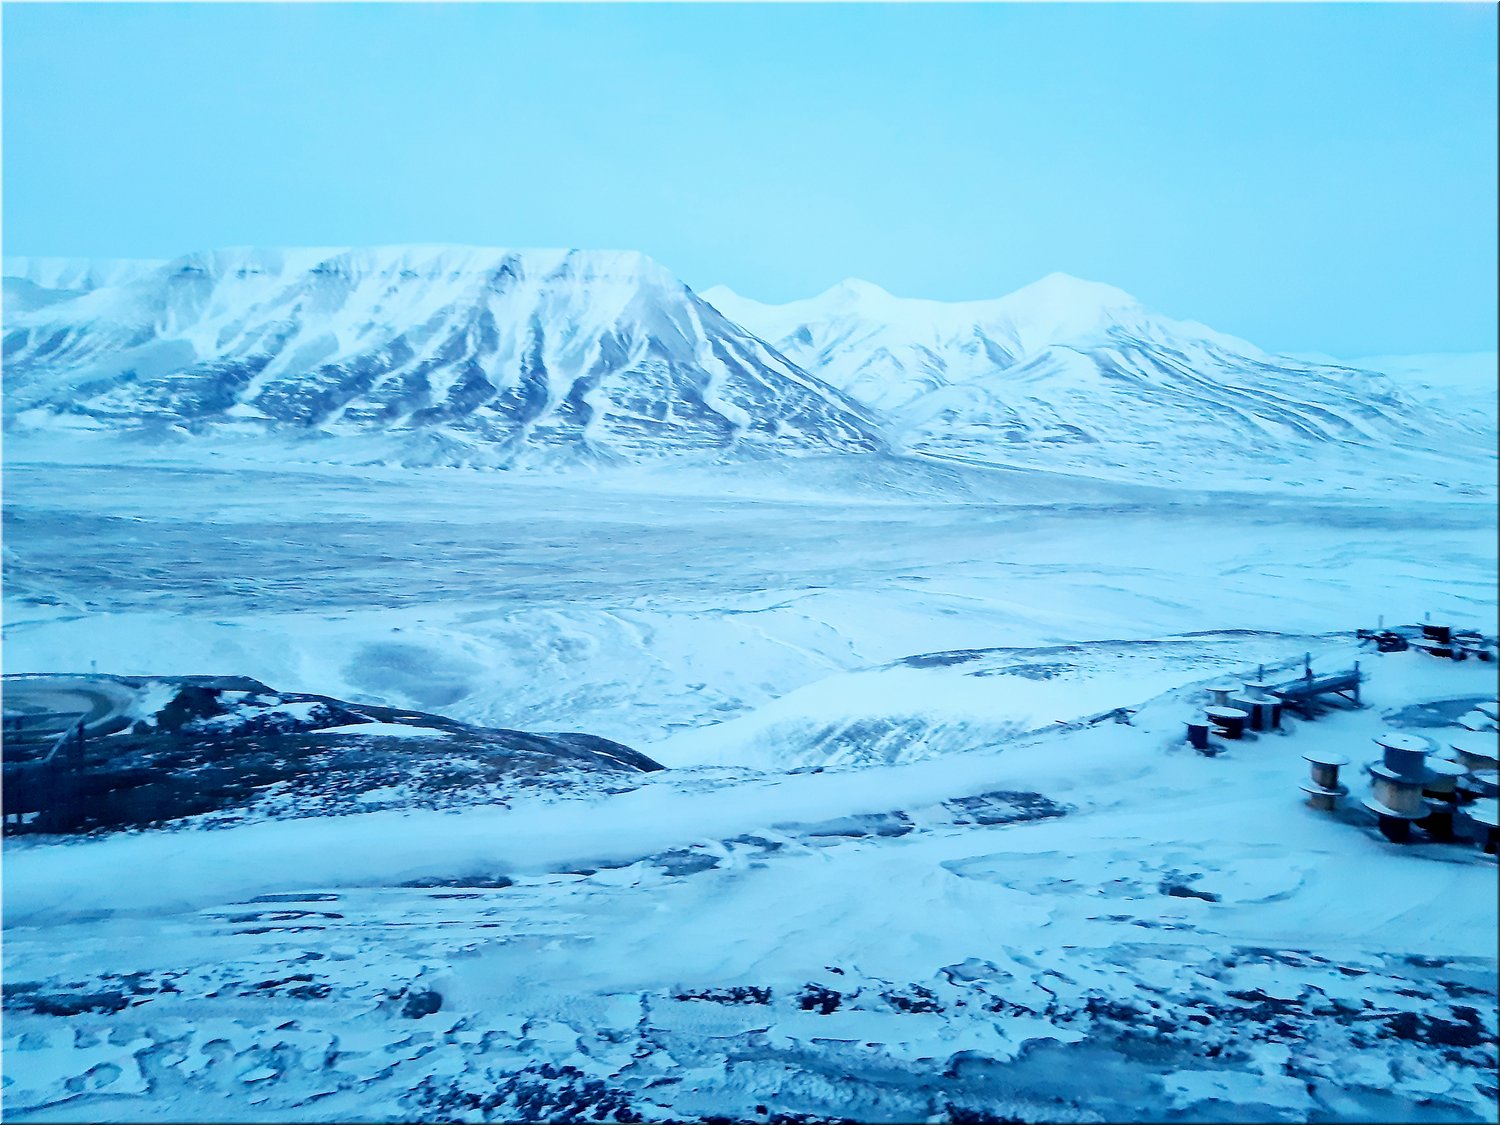 01211021-Svalbard-163259;Jaja.jpg